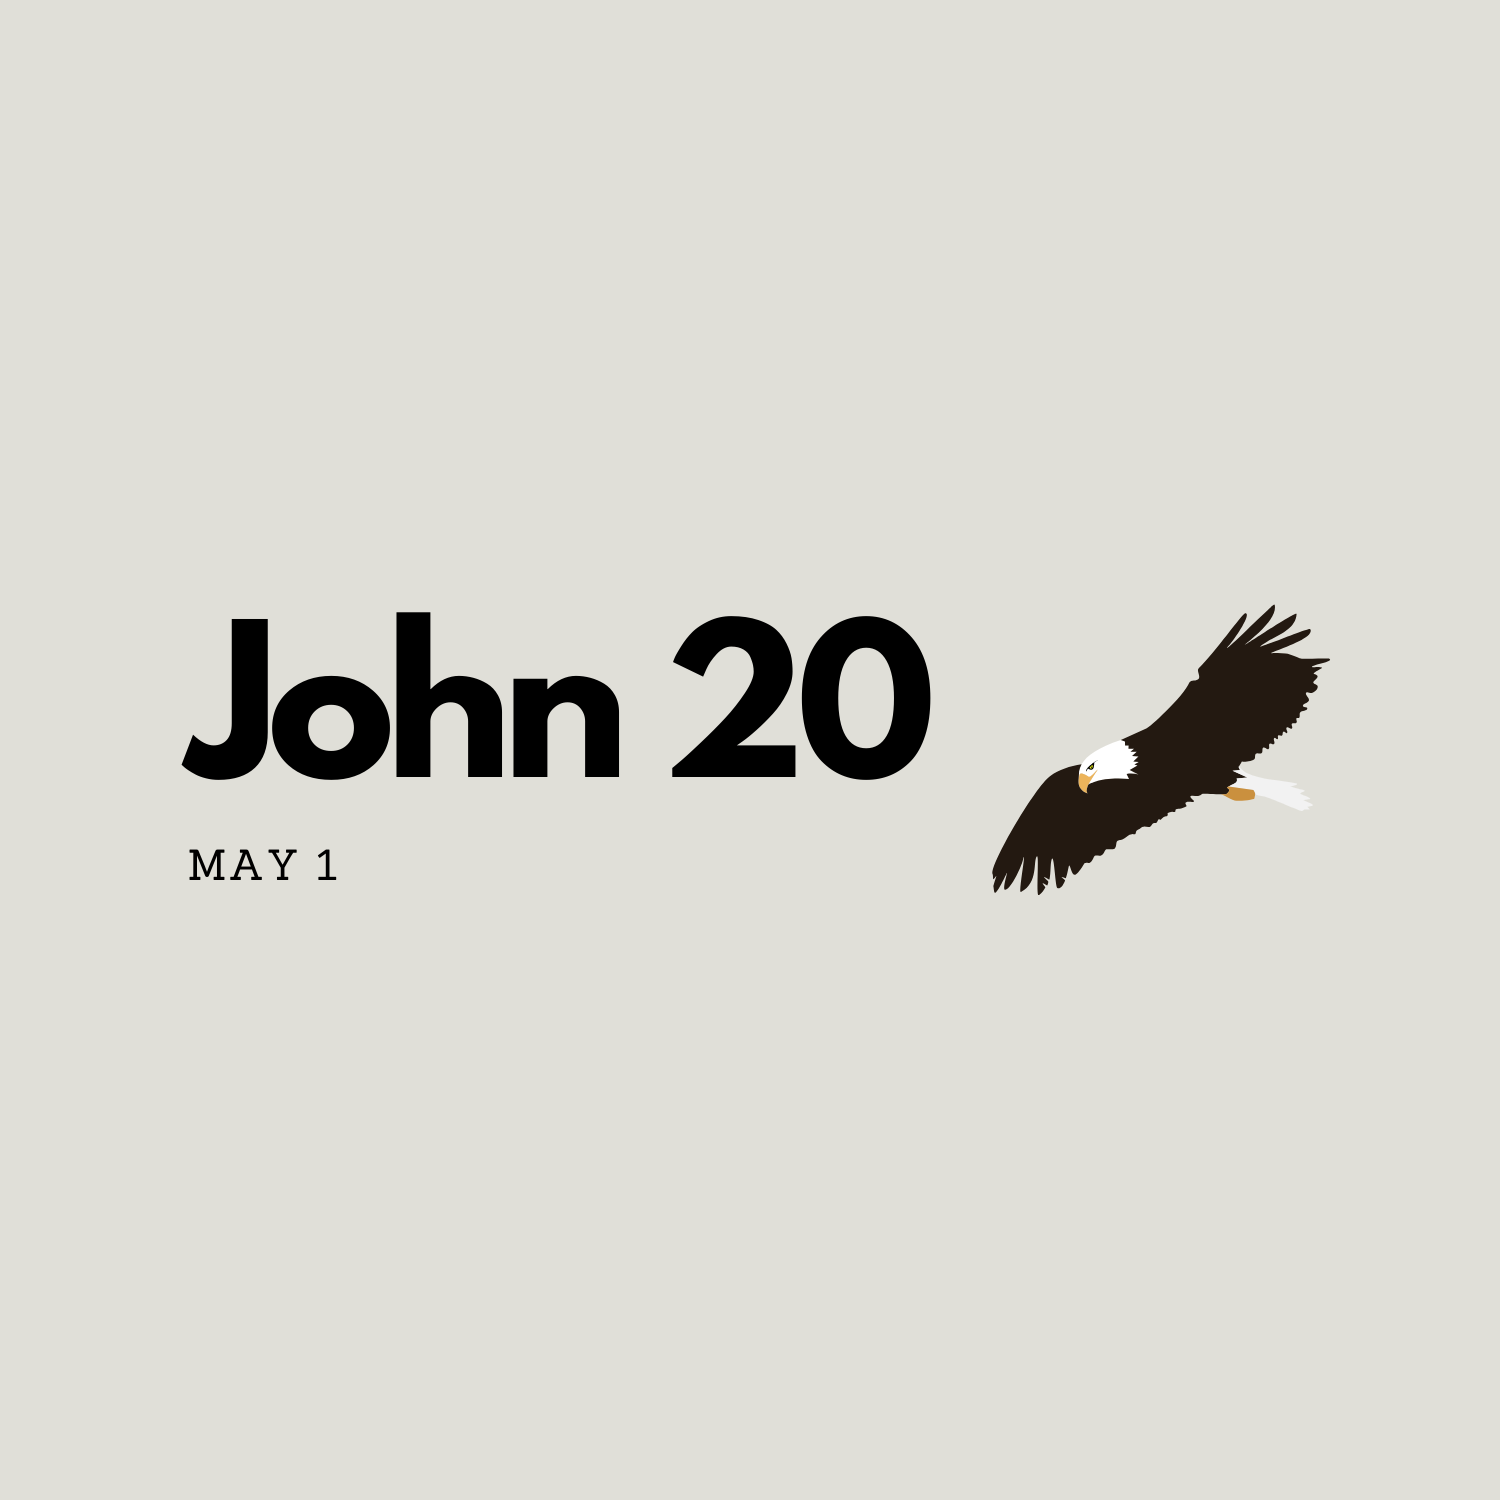 May 1: John 20